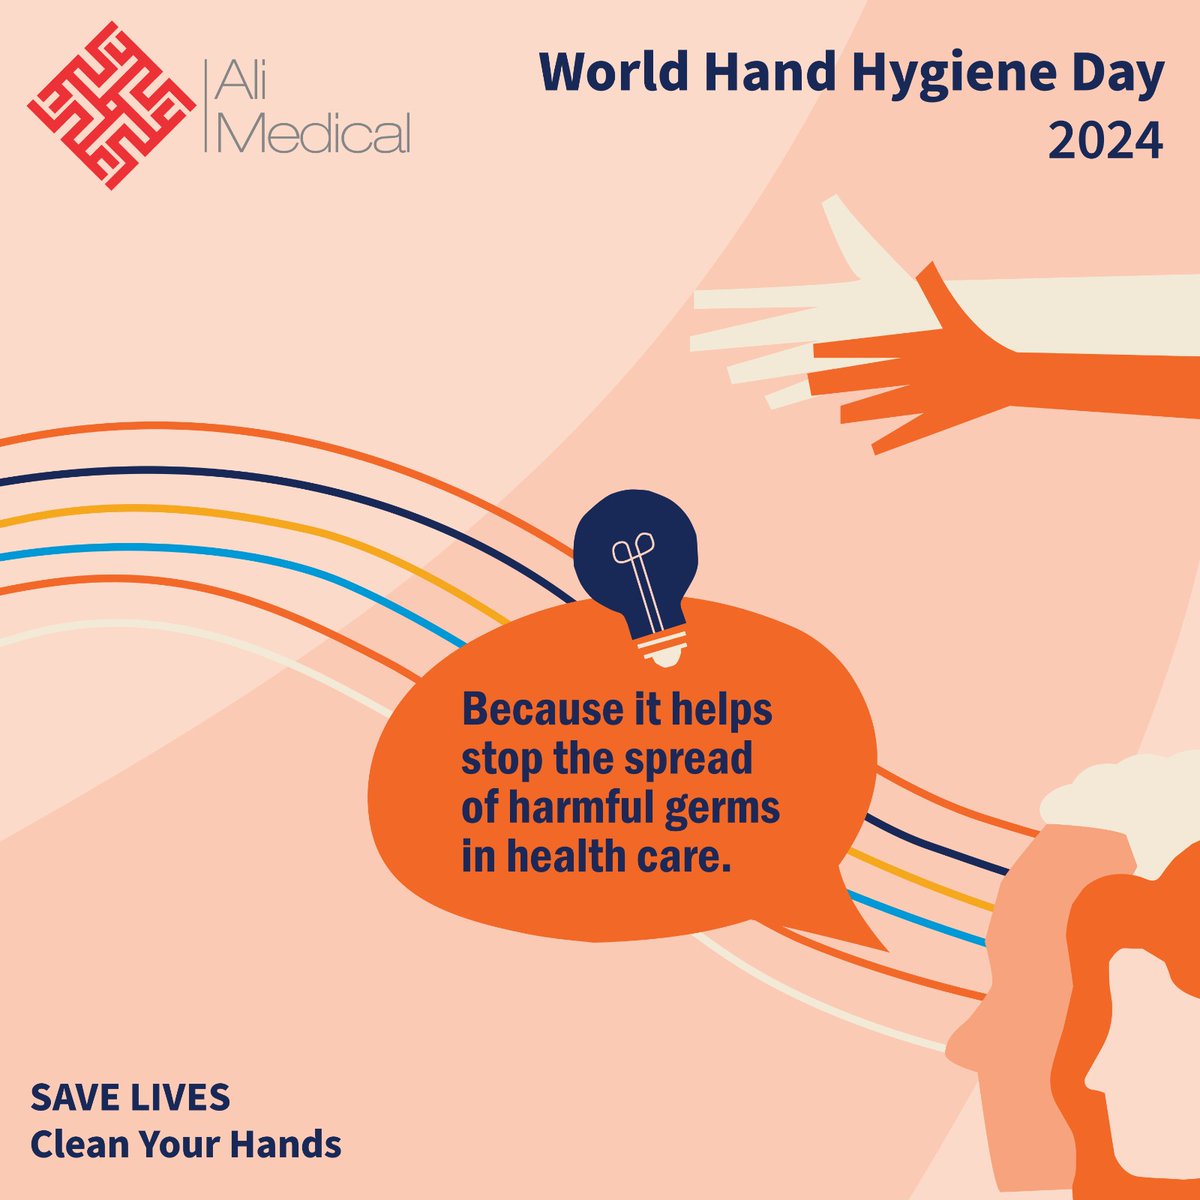 #WorldHandHygieneDay  #worldhandhygieneday2024 #handhygienematters